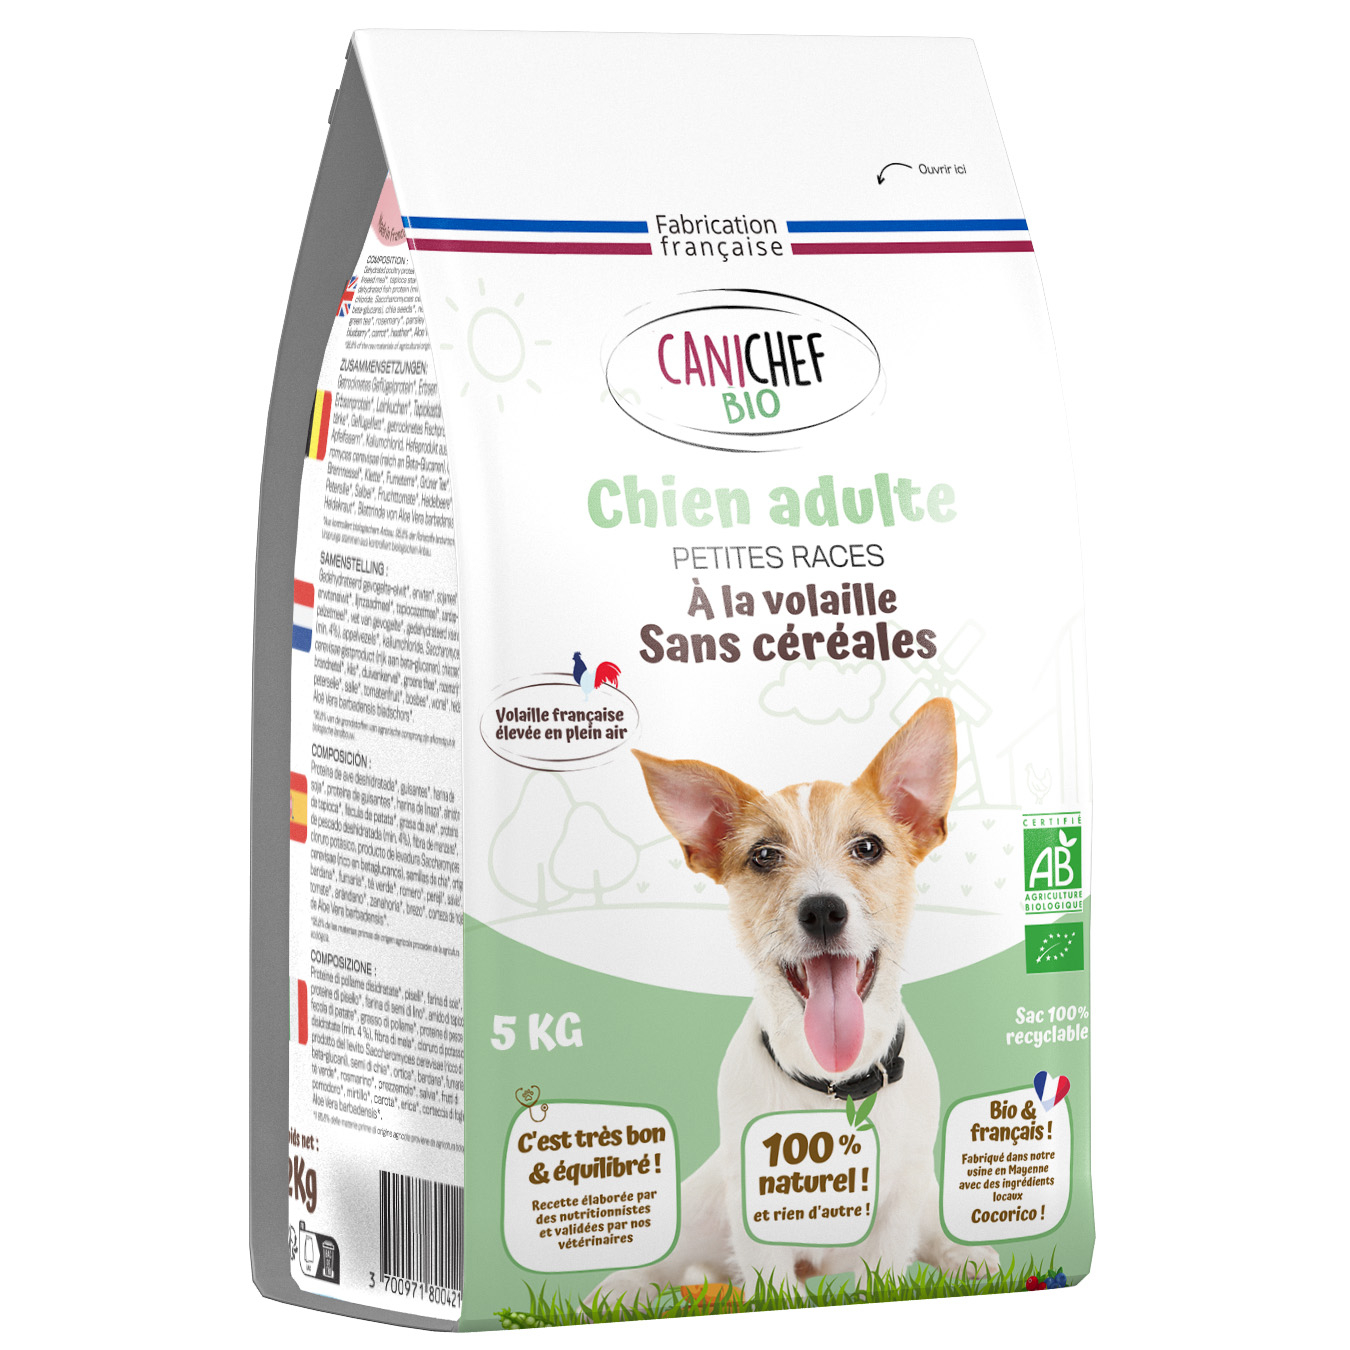 CANICHEF BIO Pienso sin cereales para perros de razas pequeñas